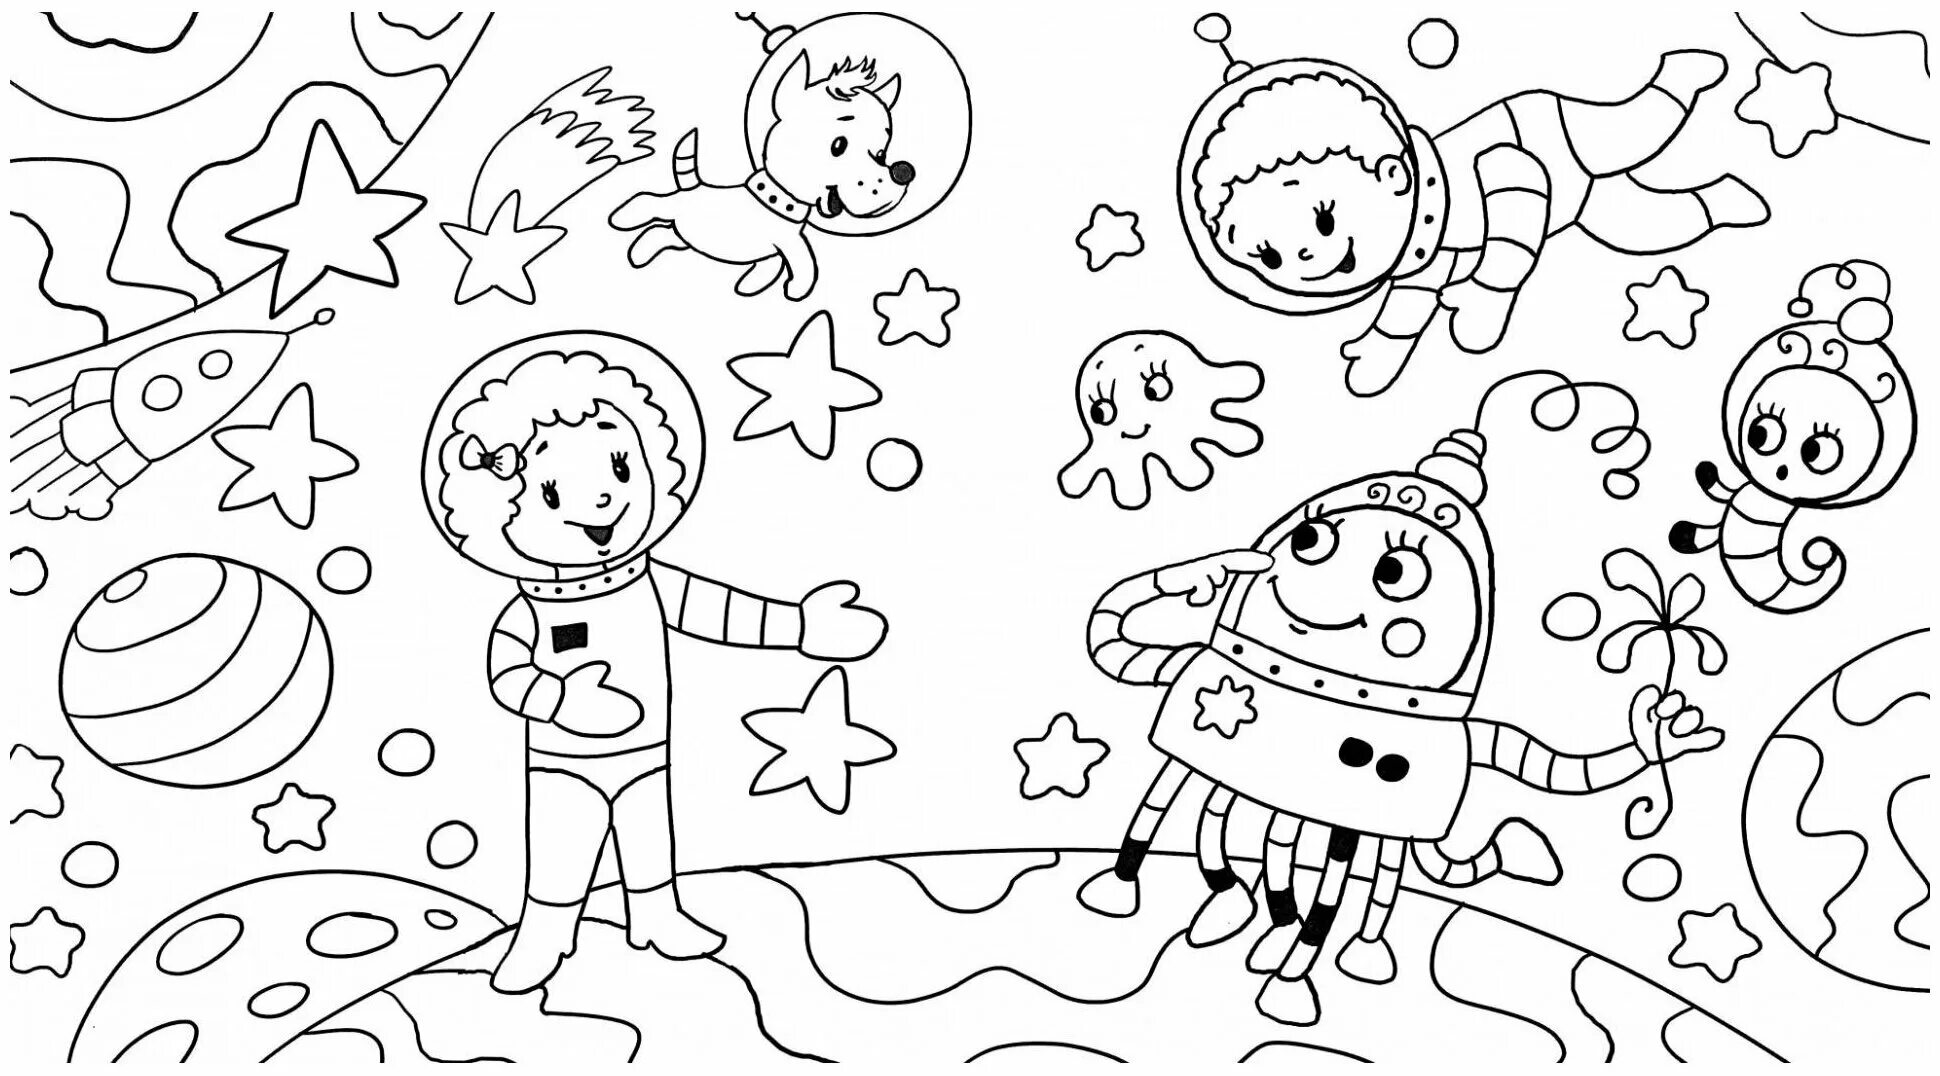 Тема космос для детей 7 лет. Раскраска. В космосе. Космос раскраска для детей. Космические раскраски для детей. Раскраски для детей космас.